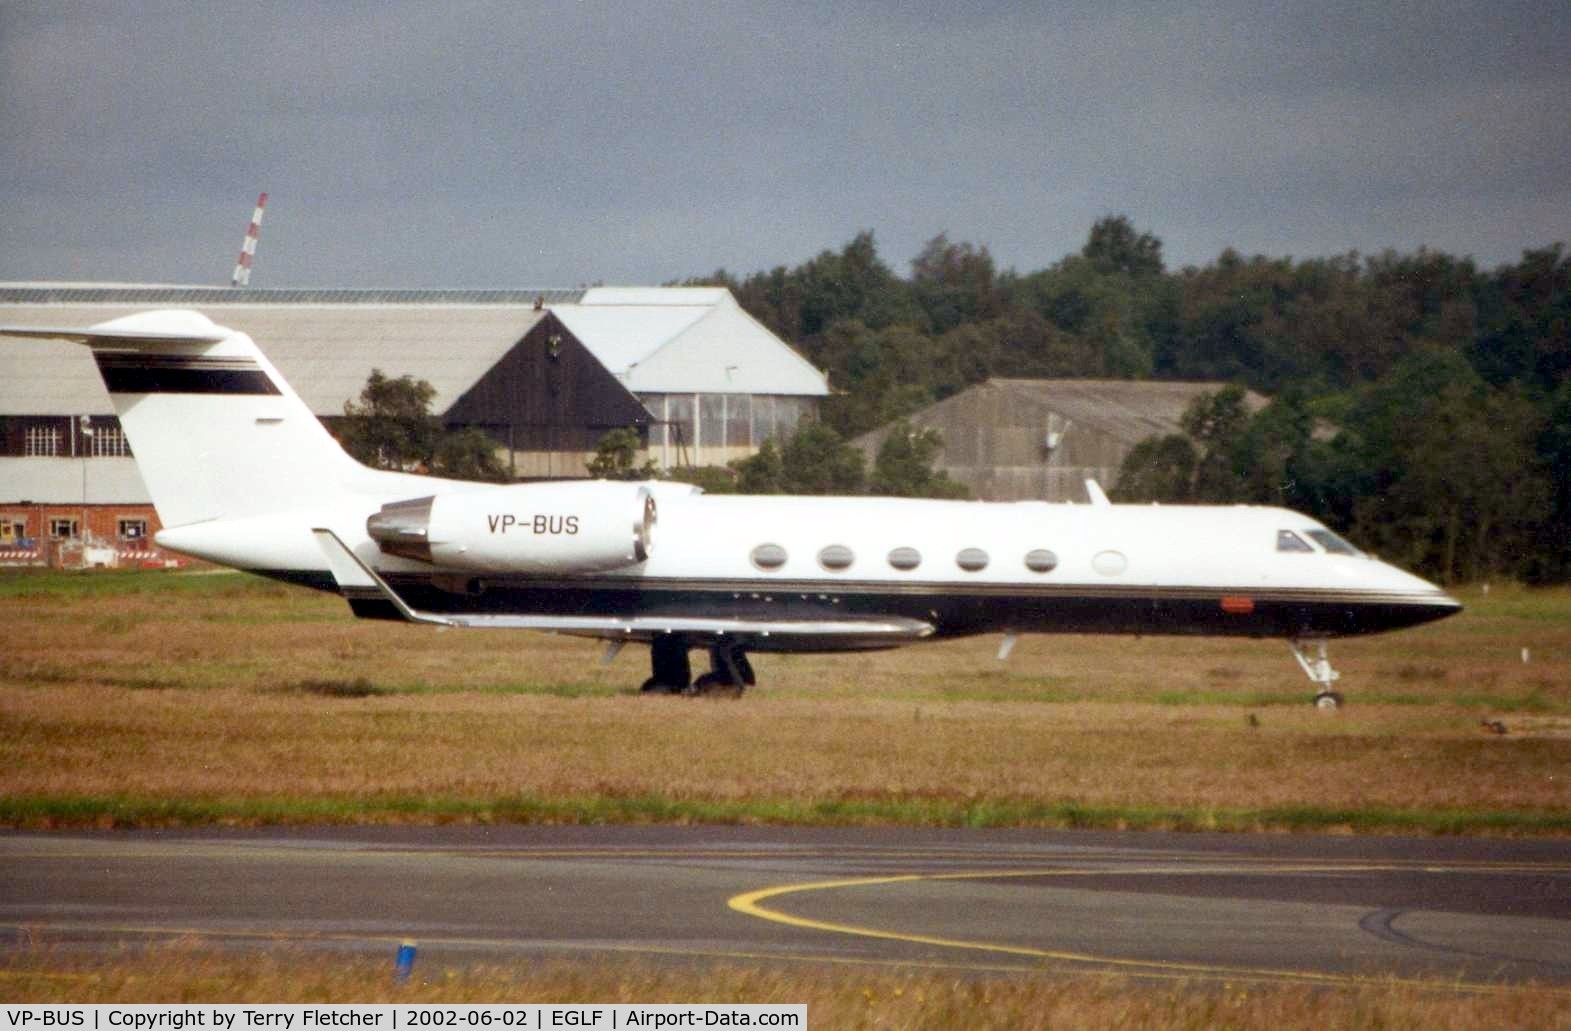 VP-BUS, 1990 Gulfstream Aerospace G-IV C/N 1127, G1159c at Farnborough in 2002